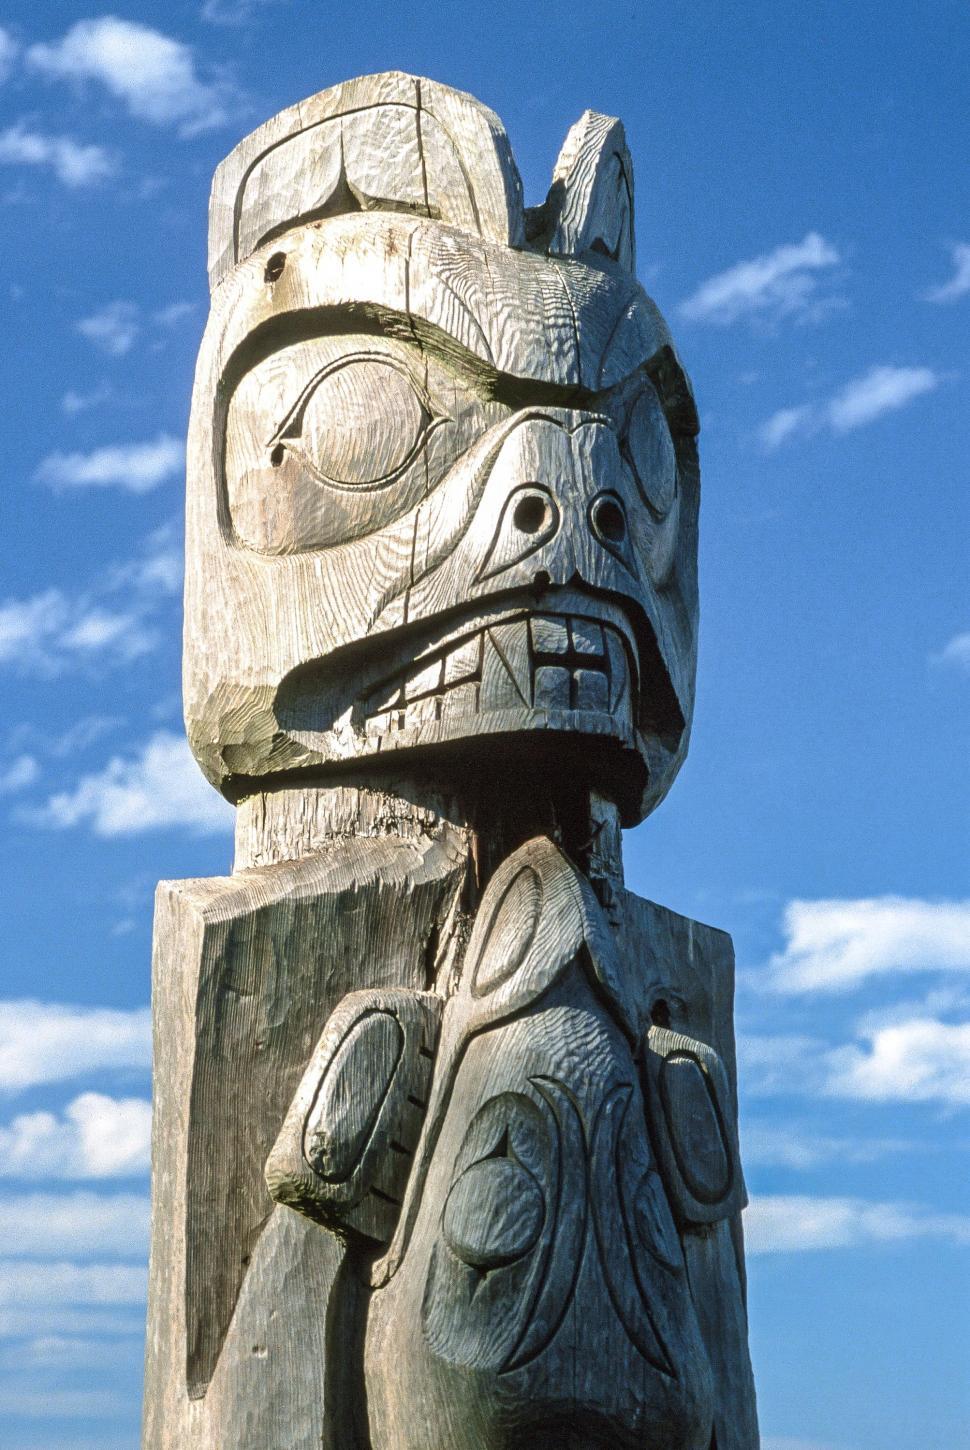 Free Image of Totem pole 